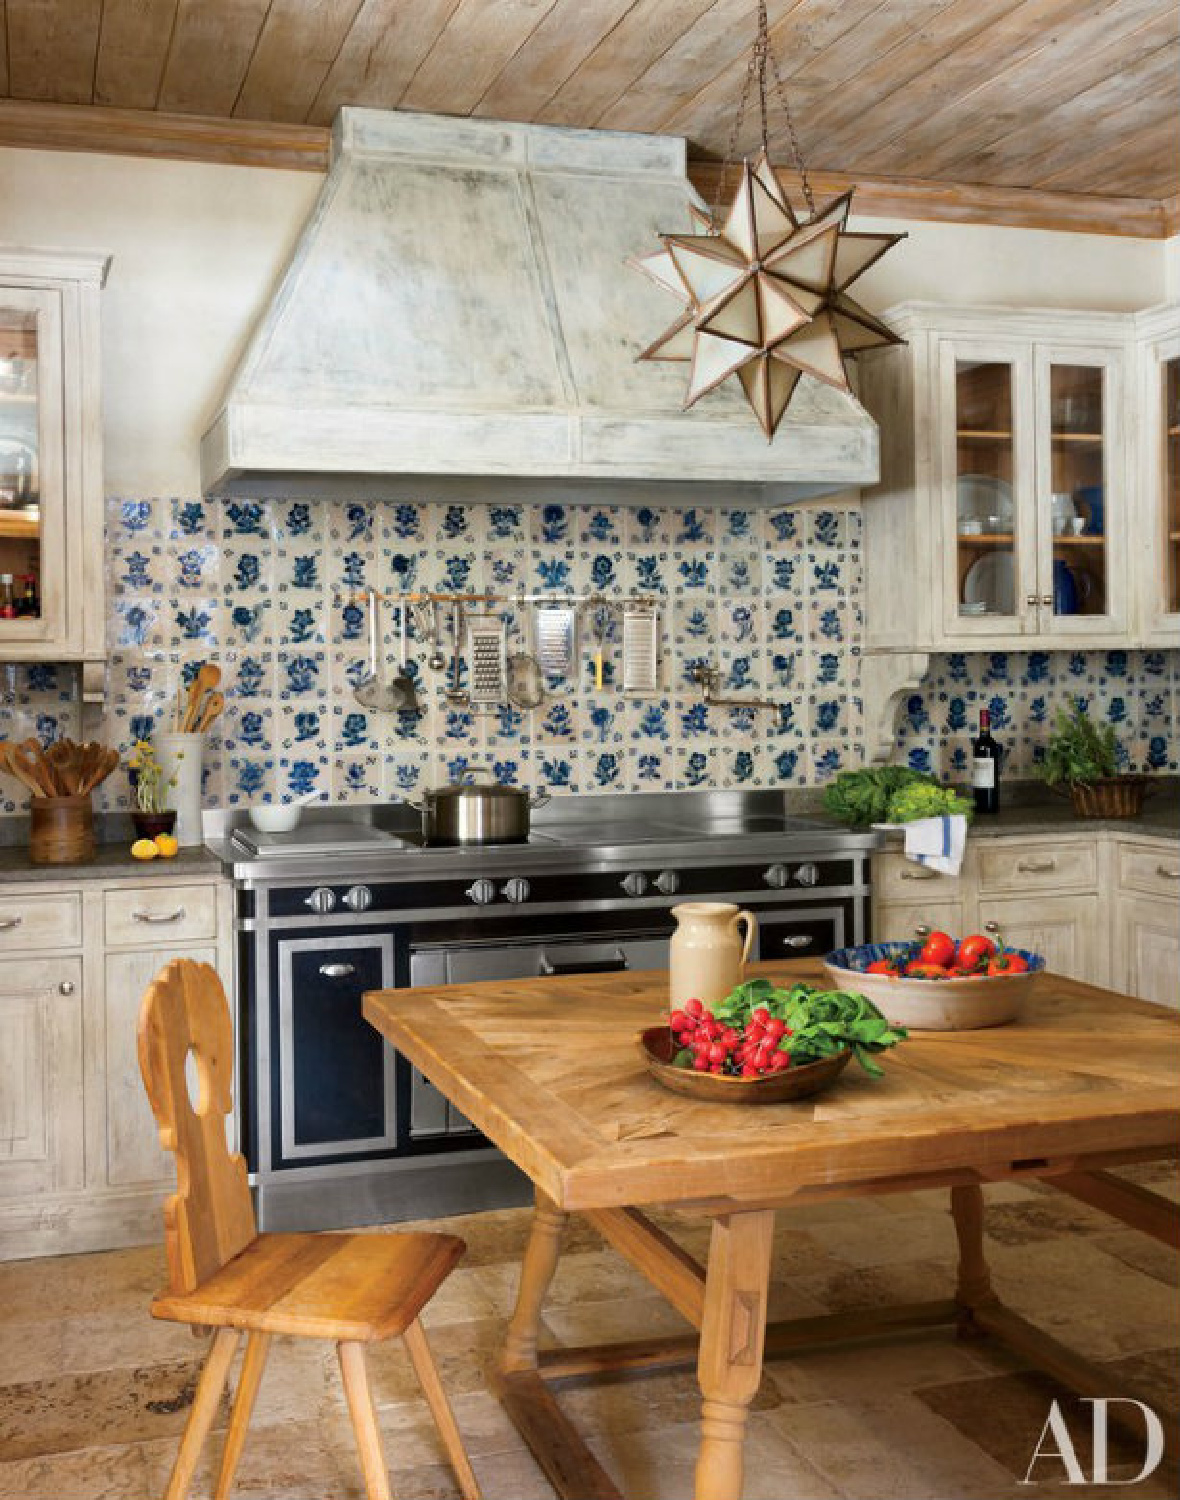 Studio Peregalli - cozinha elegante e atemporal com azulejos azuis em casa milanesa retratada em AD.  #cozinhaelegante #país europeu #estilodovelhomundo #cozinhasatemporais